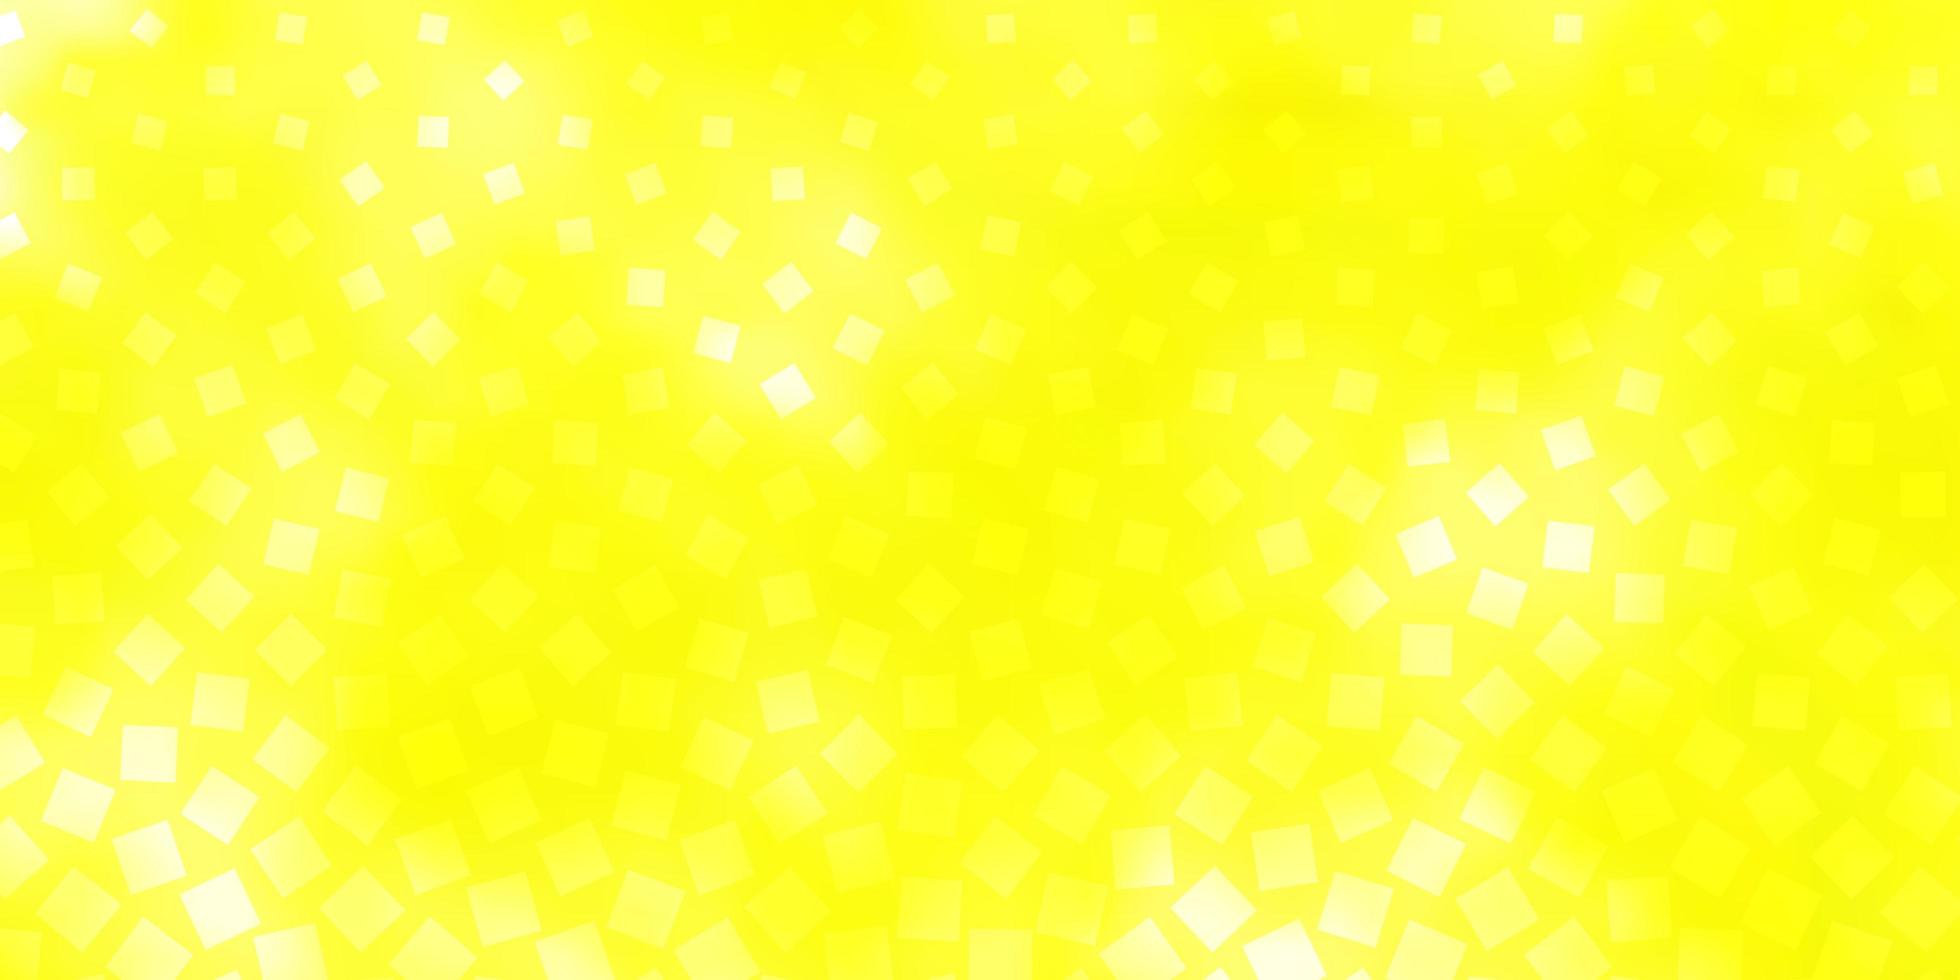 sfondo vettoriale giallo chiaro con rettangoli.